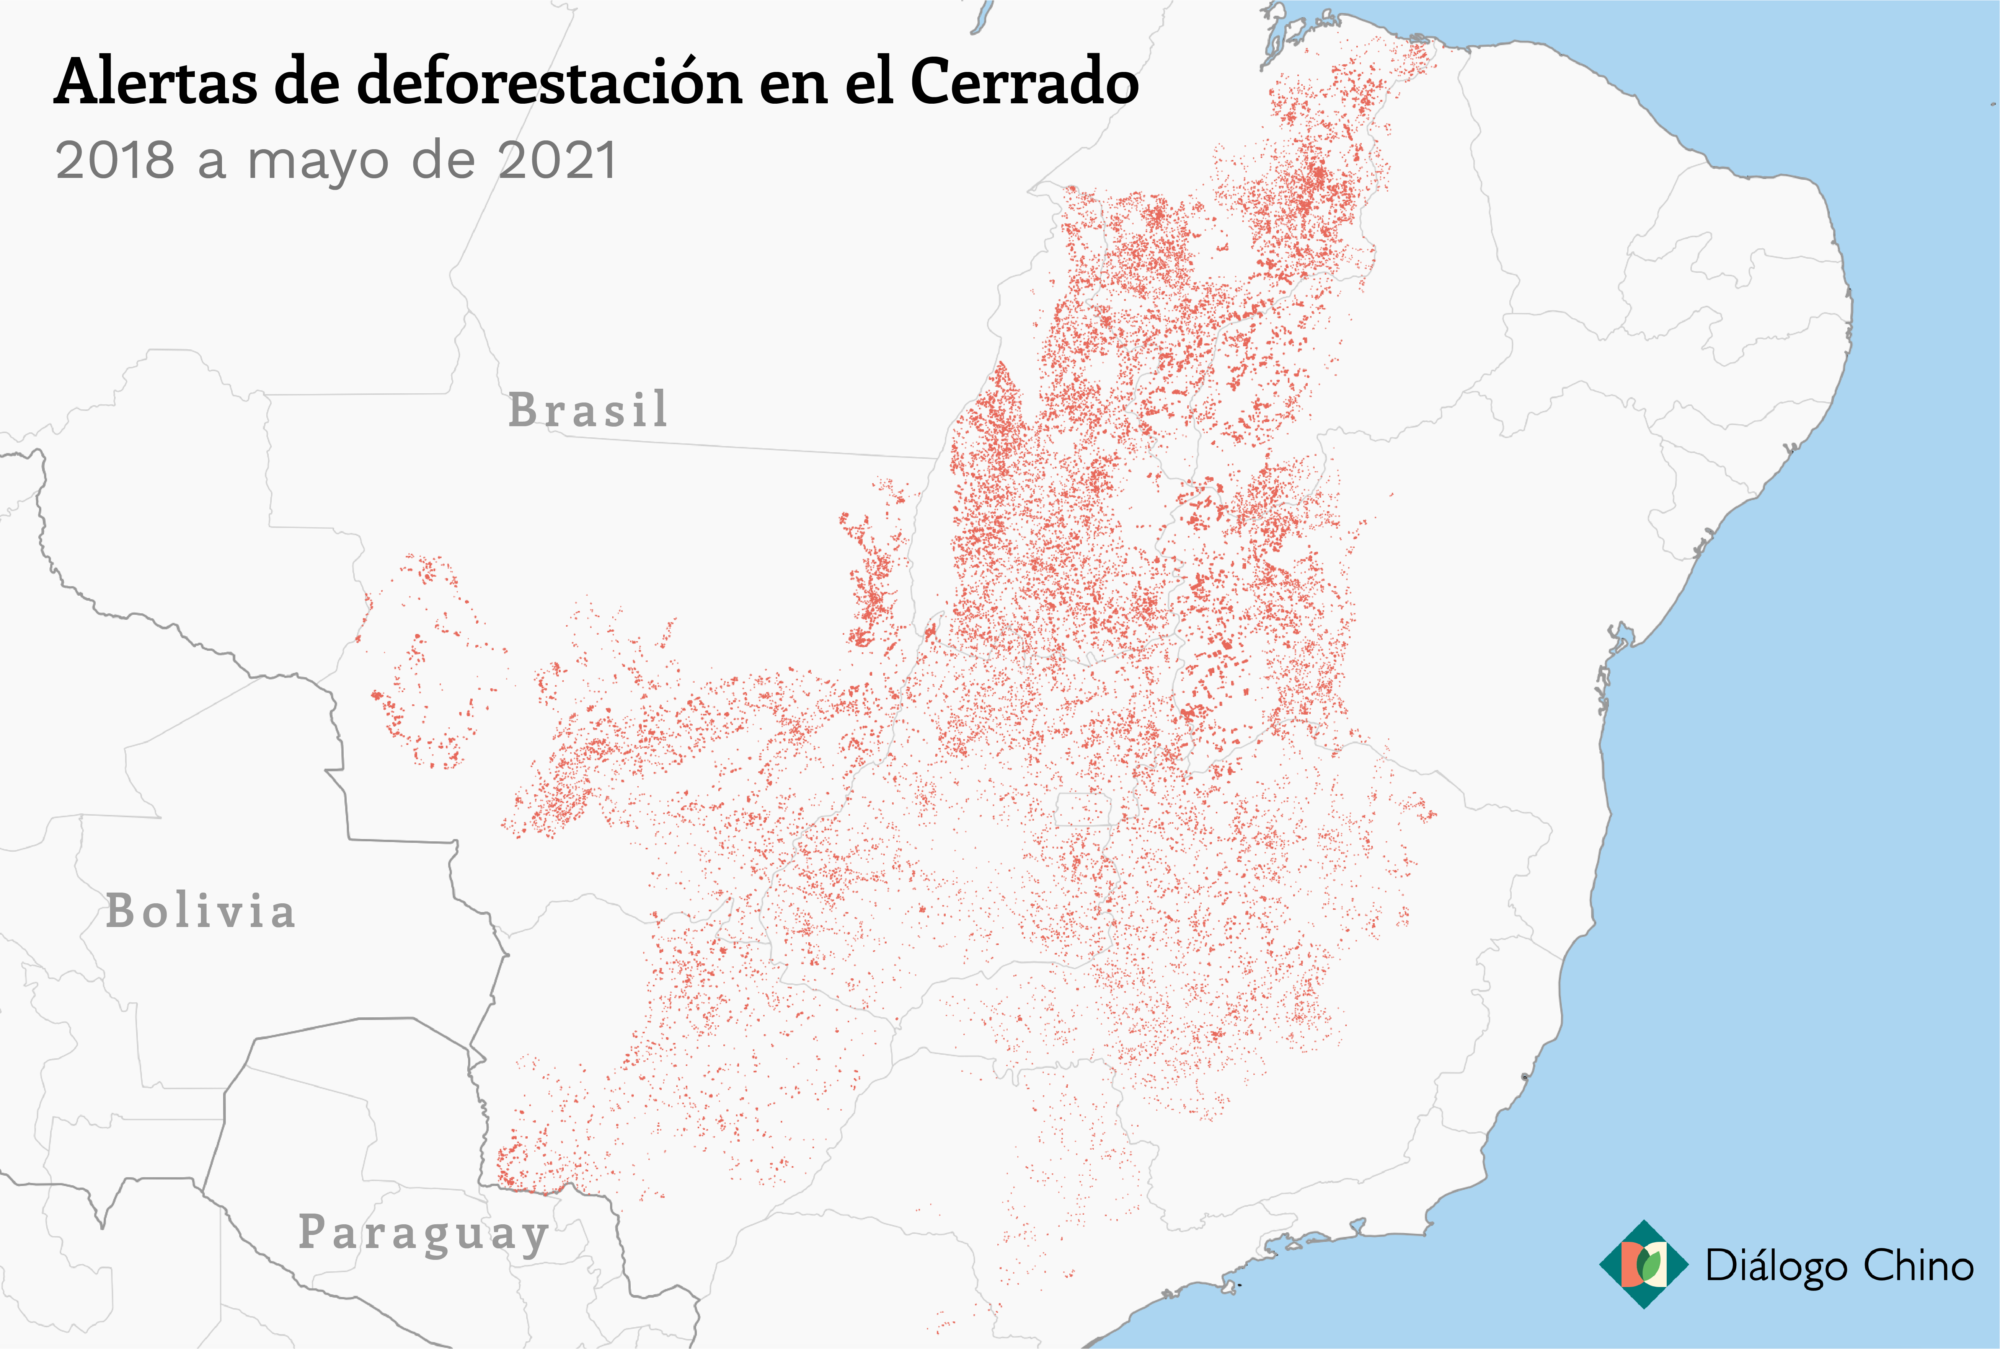 Mapa que muestra alertas de deforestación en el Cerrado